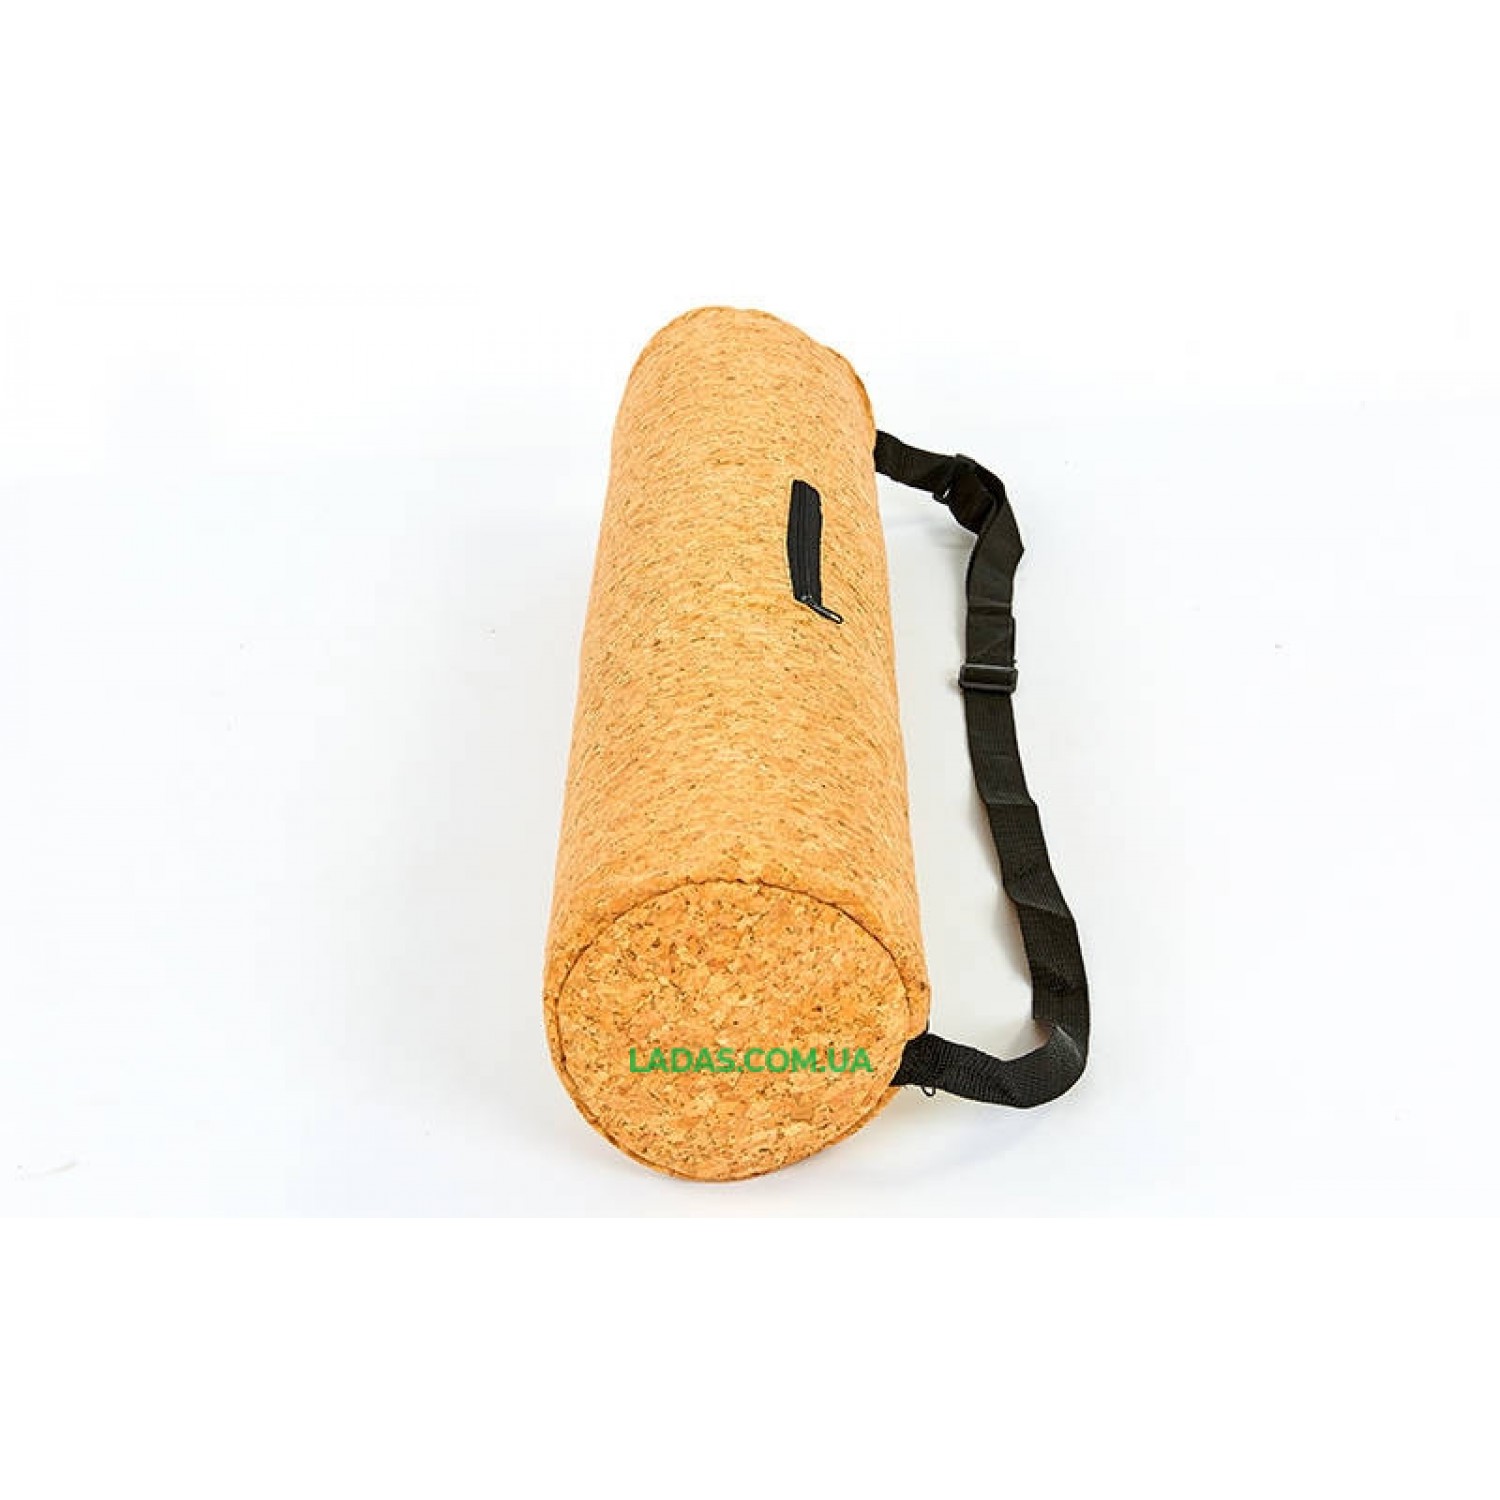 Сумка для йога коврика Yoga bag пробковая (р-р 13х65см, пробковое дерево)